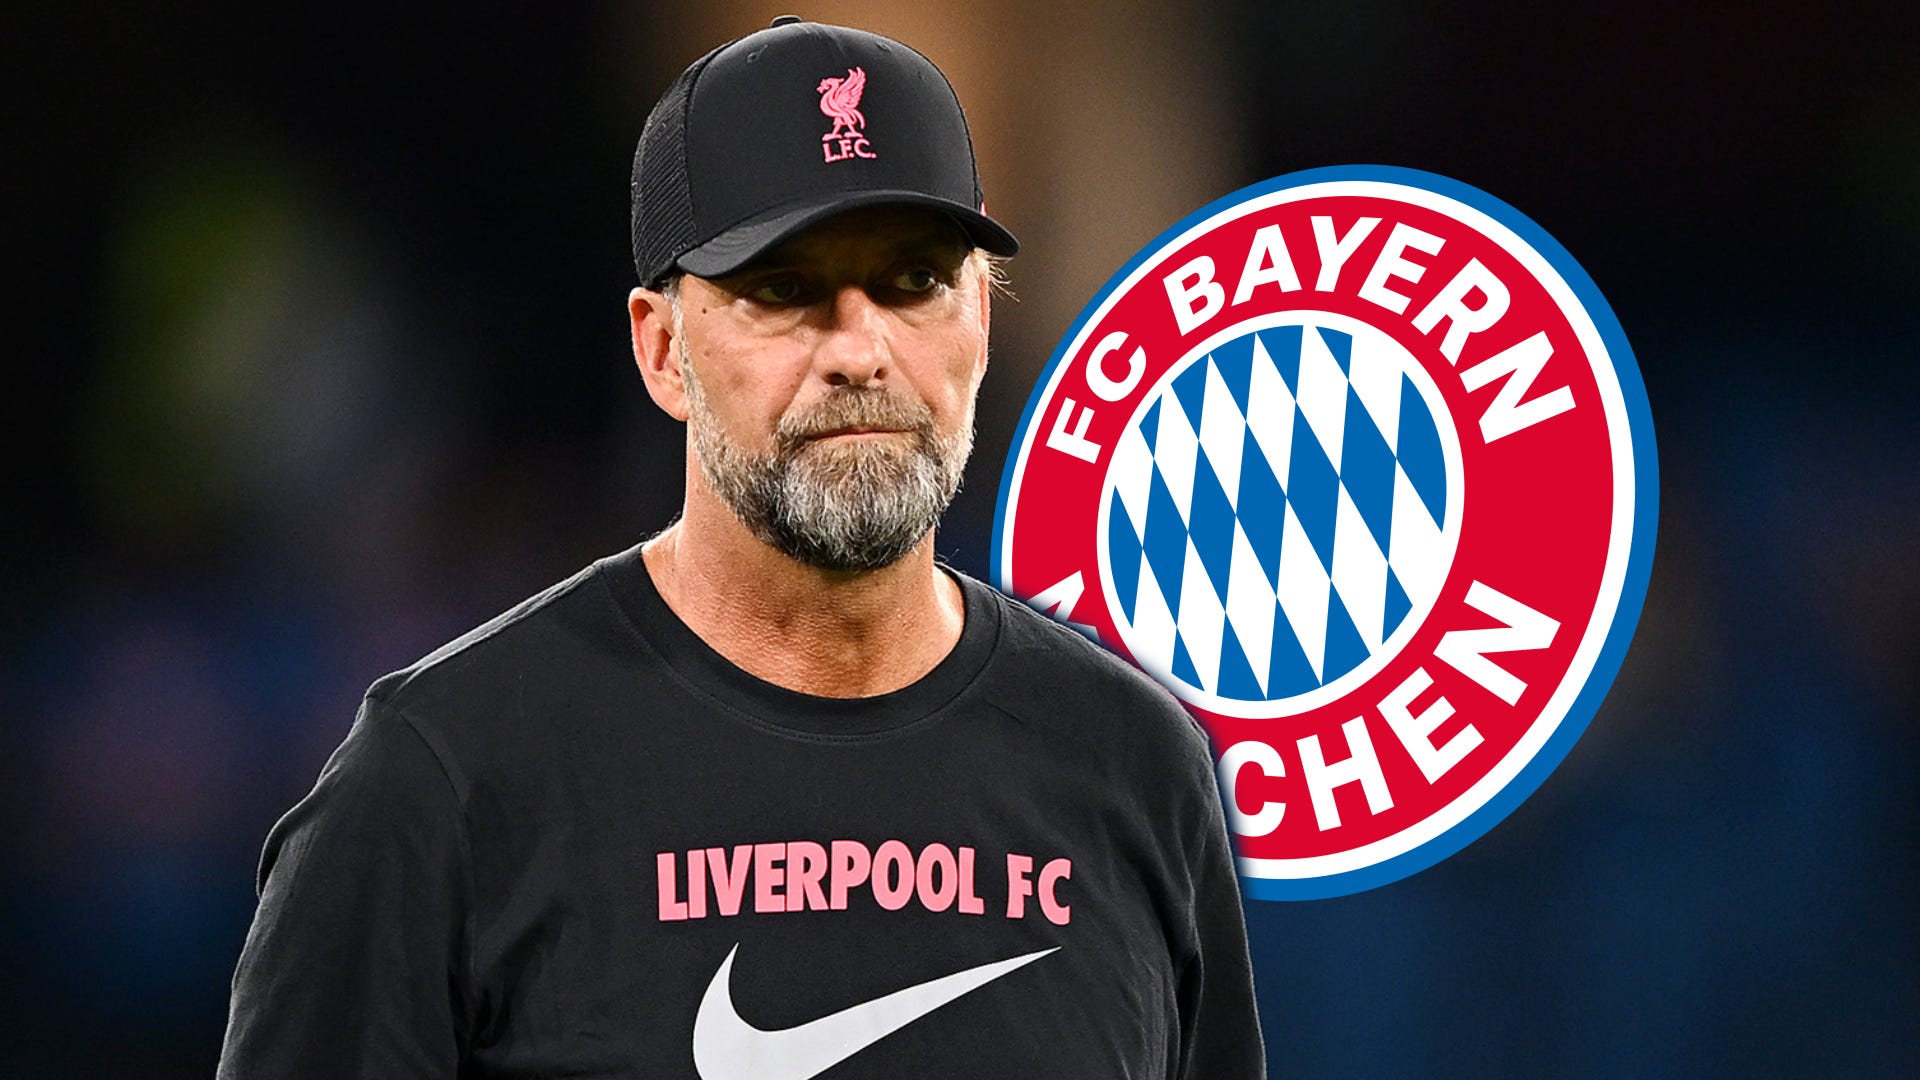 Liverpool-Trainer Jürgen Klopp: Darum hakt es bei Bayern noch | Goal.com Deutschland